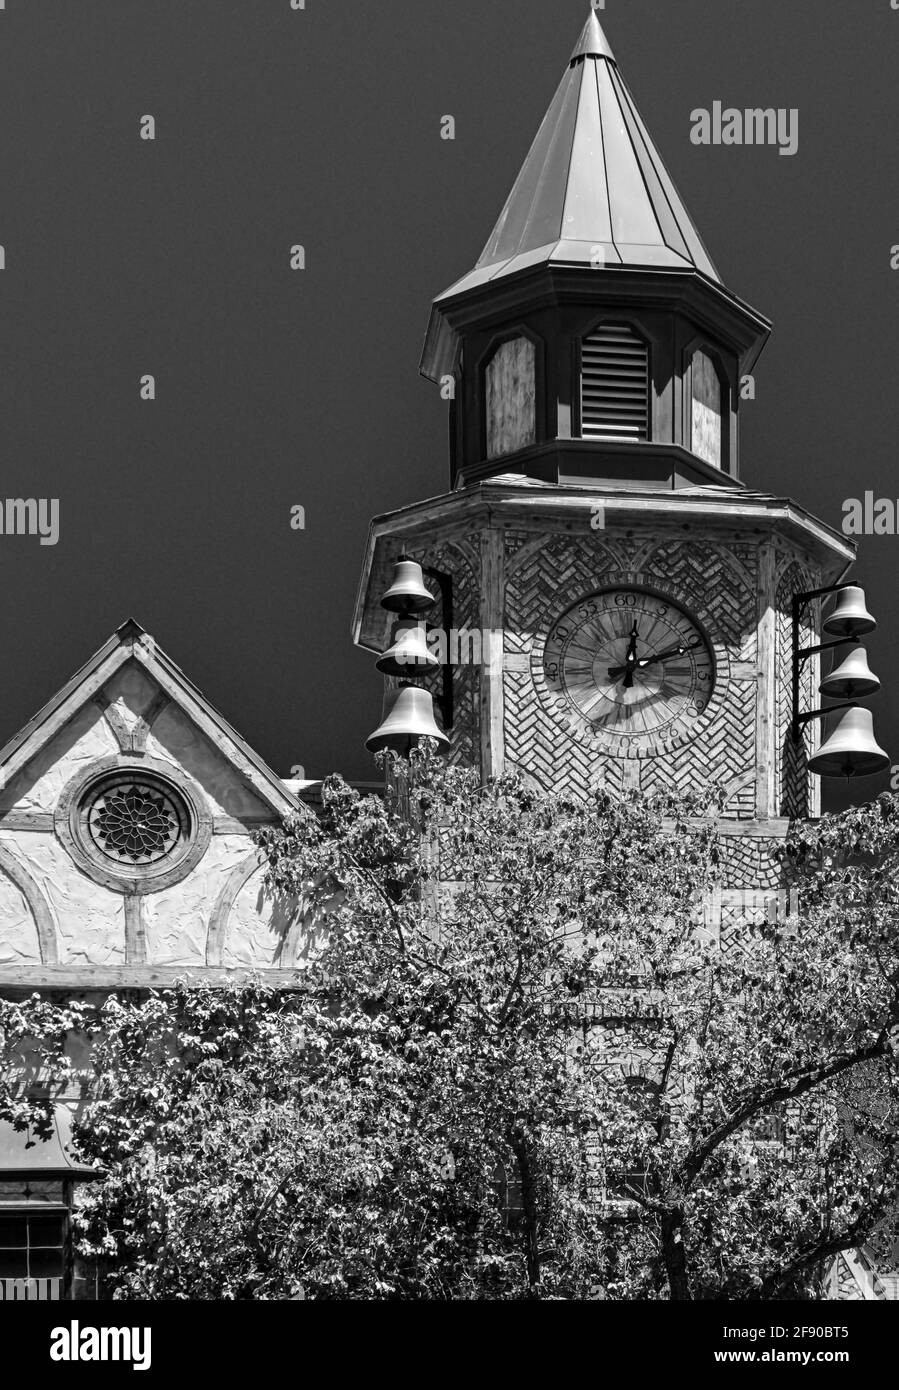 Détails architecturaux de whimsey et texture en noir et blanc de la tour de l'horloge Old Mill House à Solvang, CA , Etats-Unis Banque D'Images